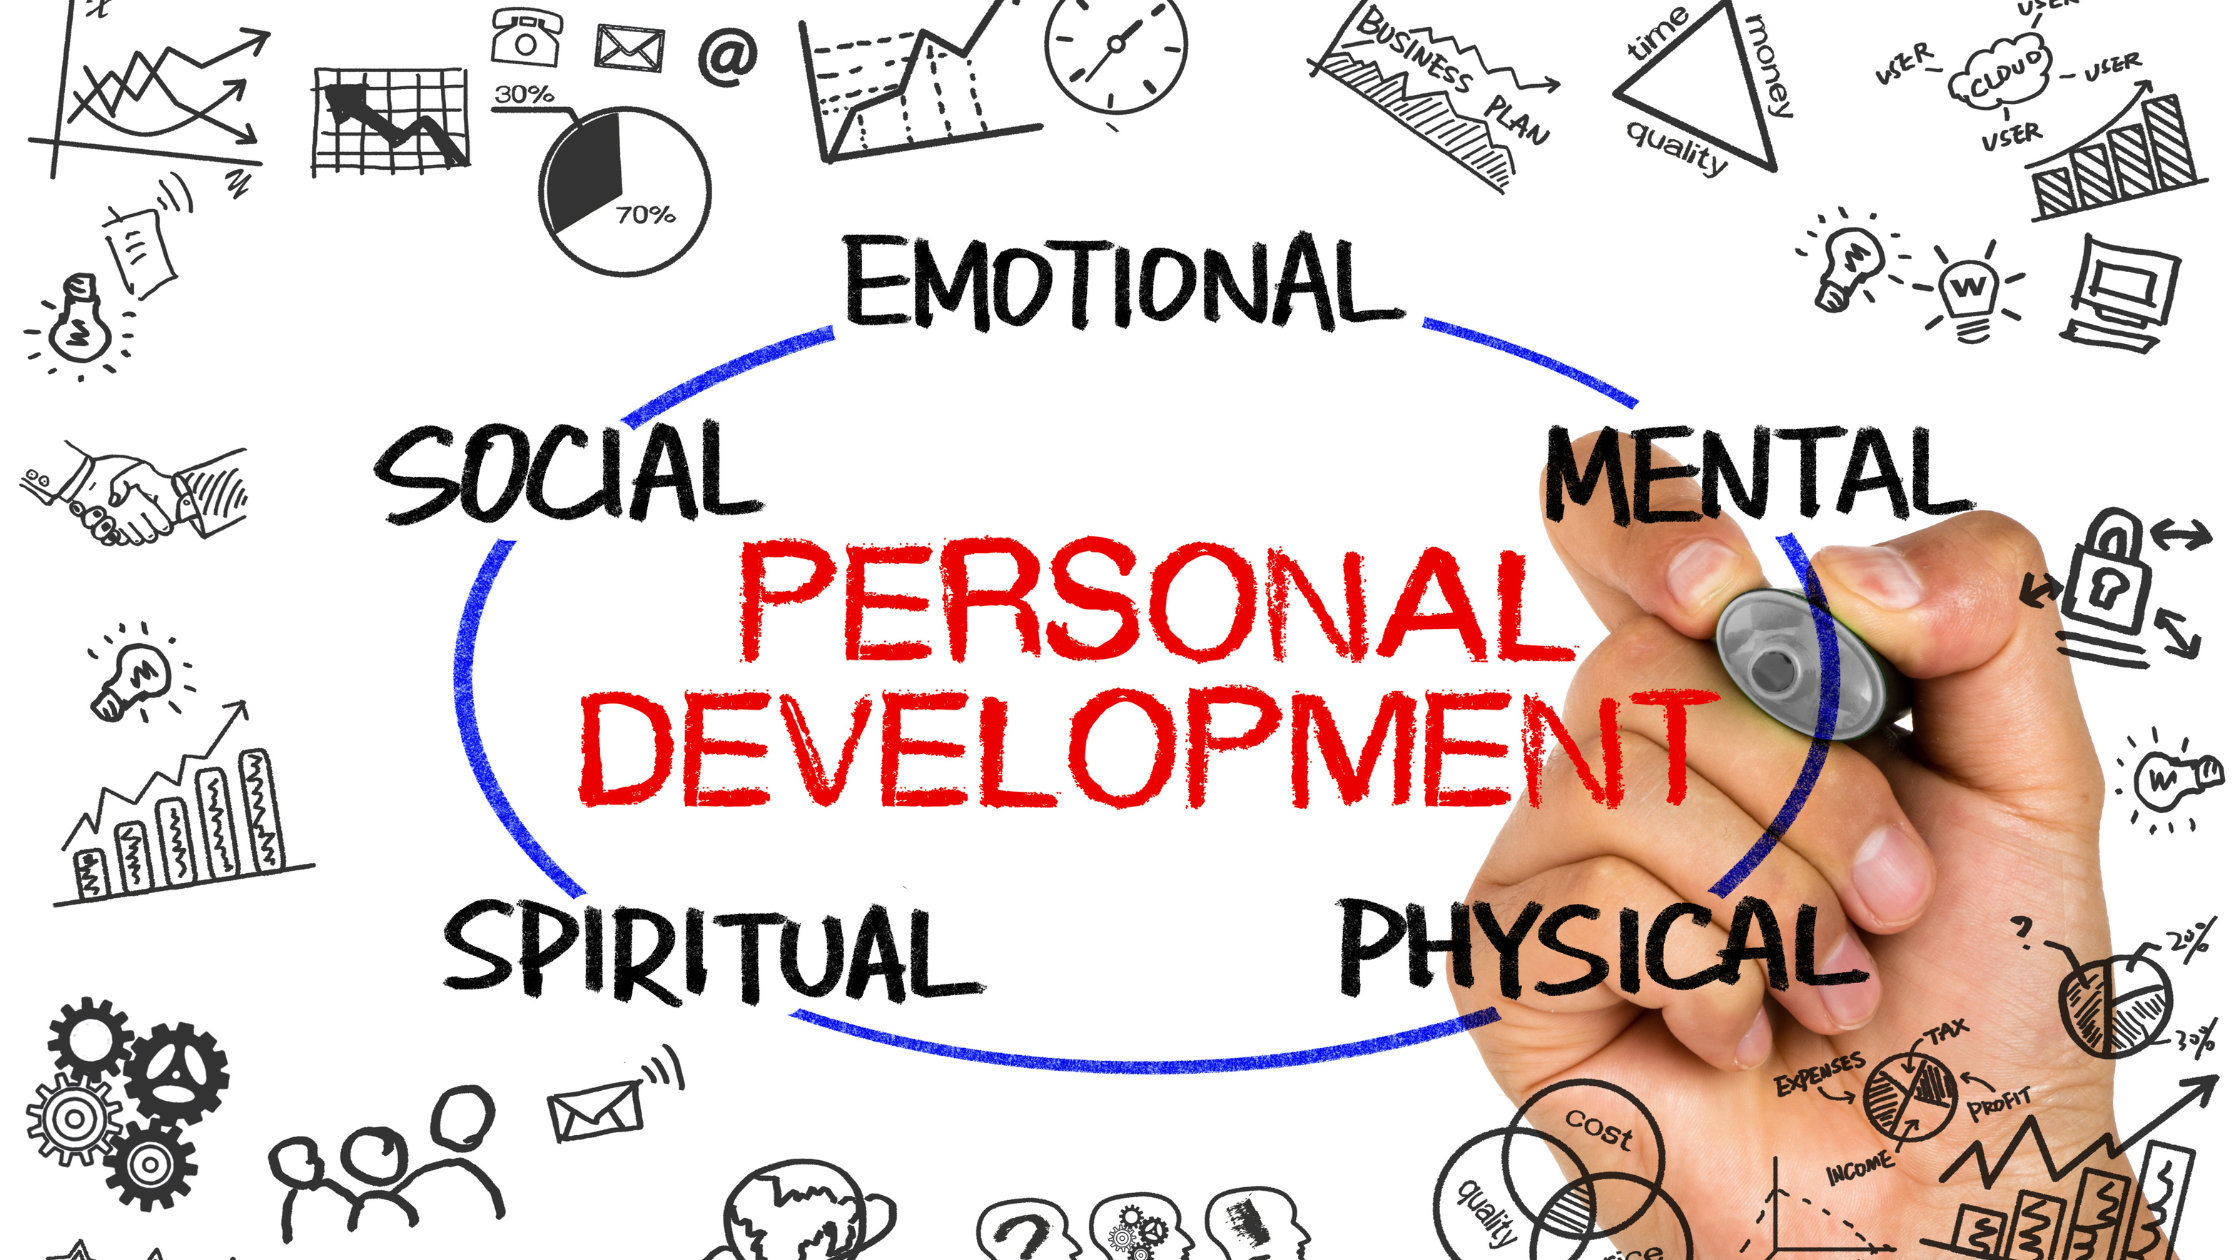 A personal development plan